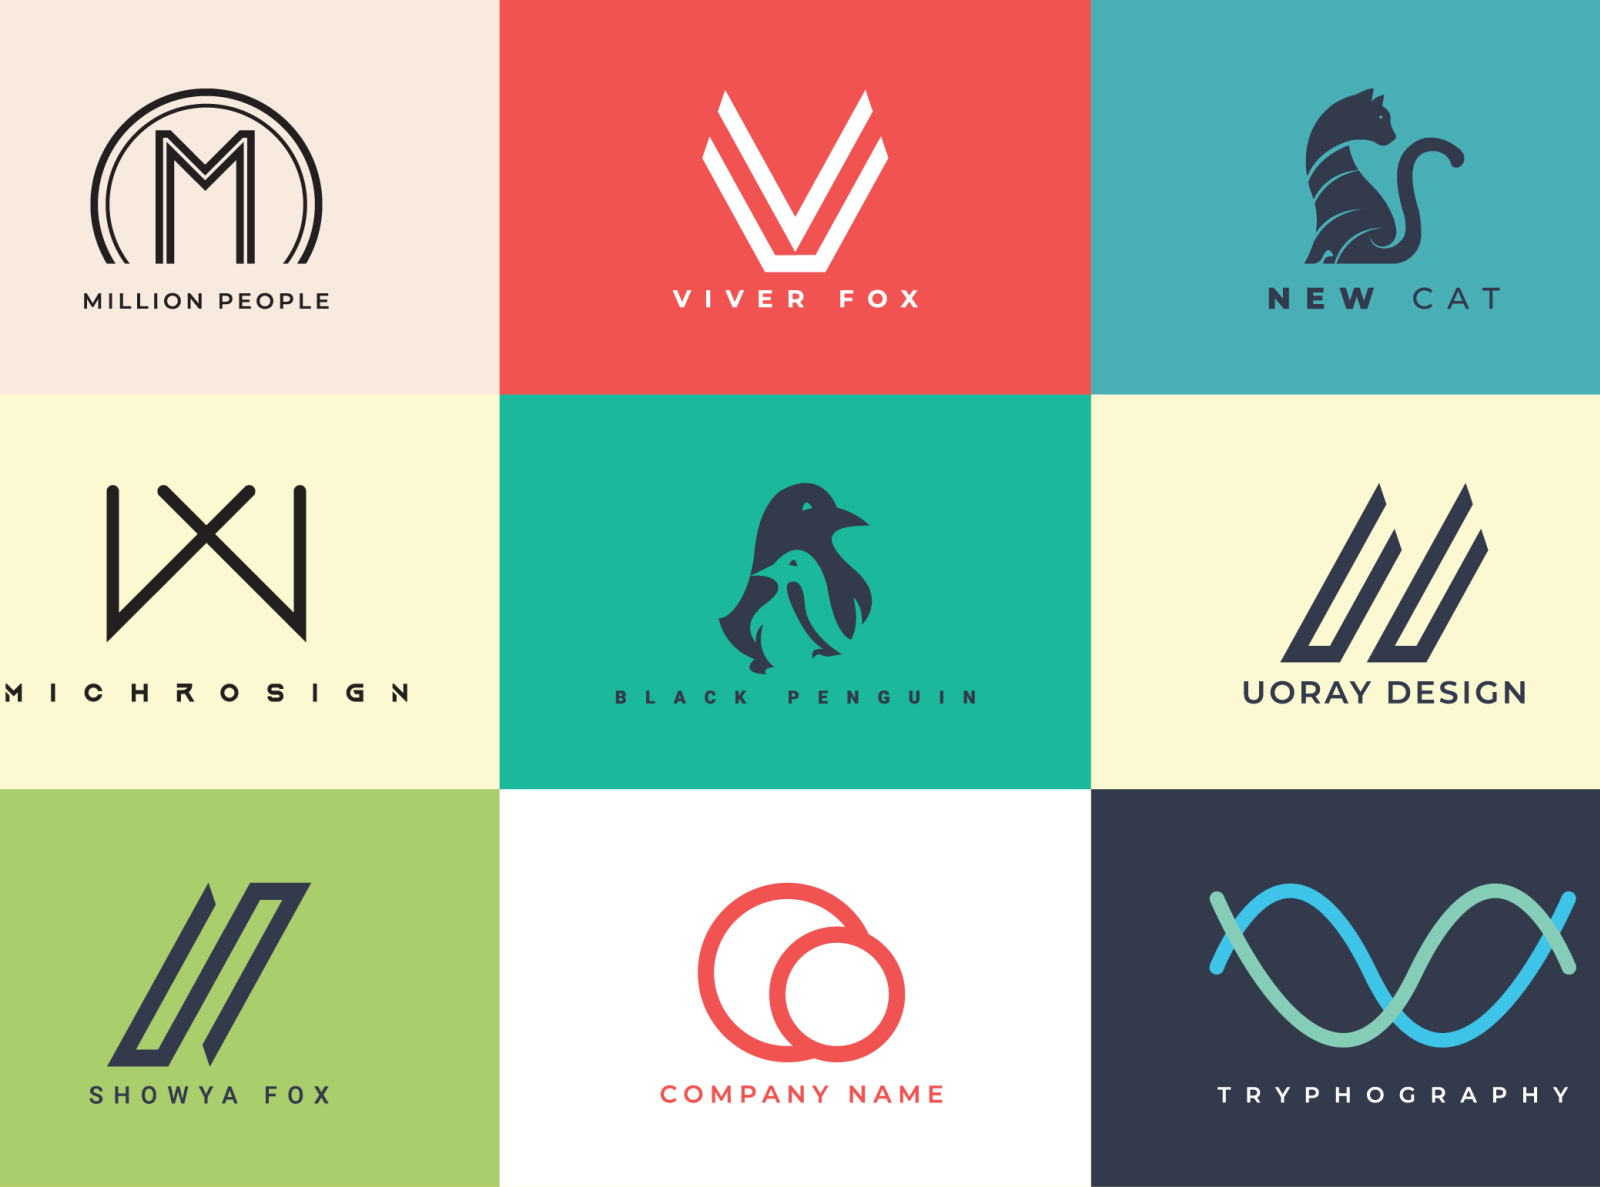 Thiết kế minimalist logos đẹp và đơn giản, phù hợp cho các thương hiệu